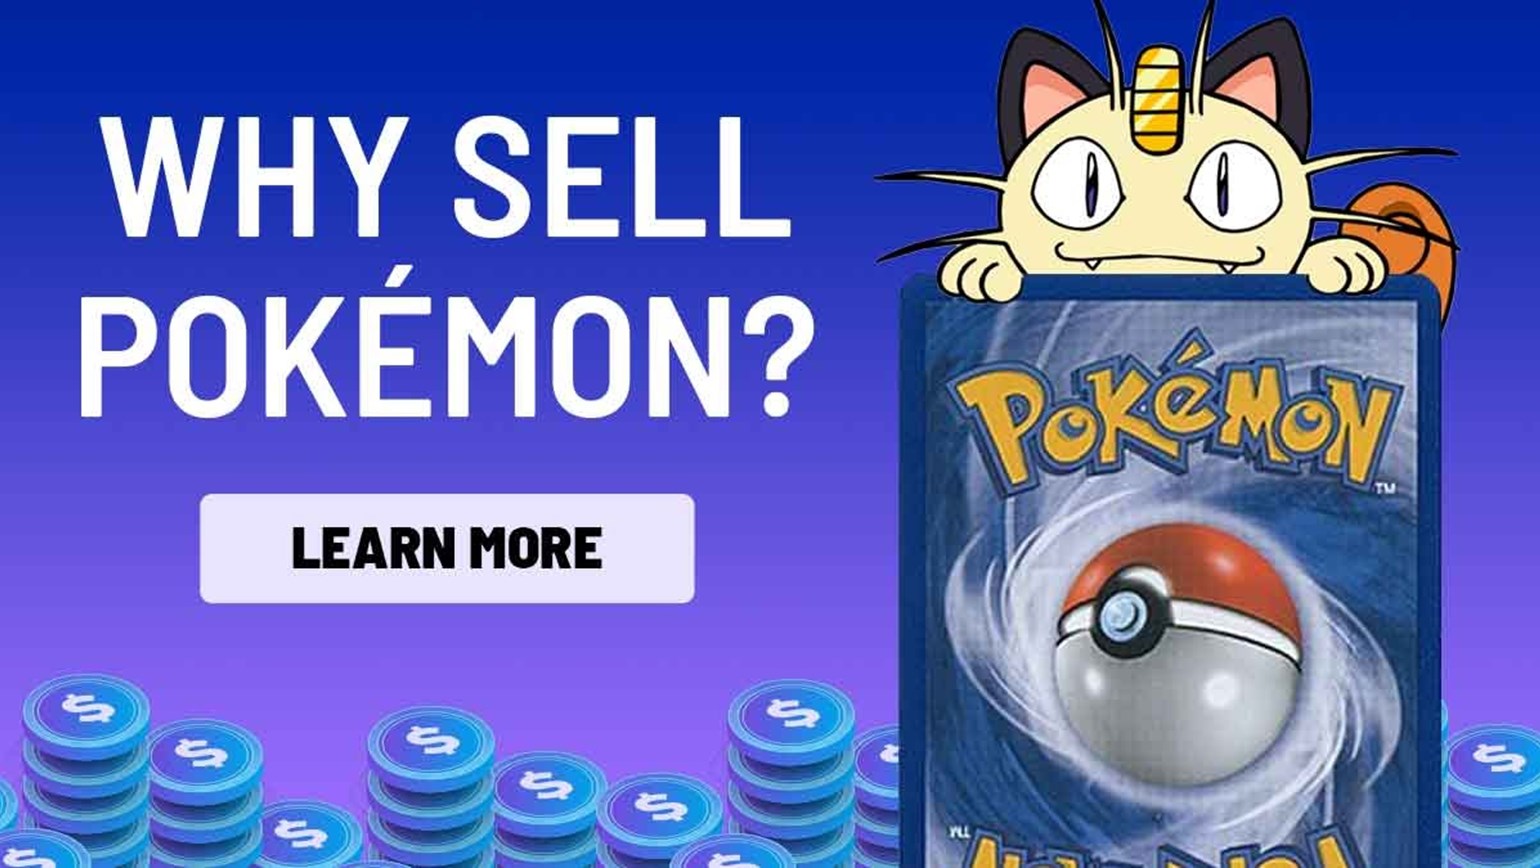 Should You Sell Pokémon Cards?